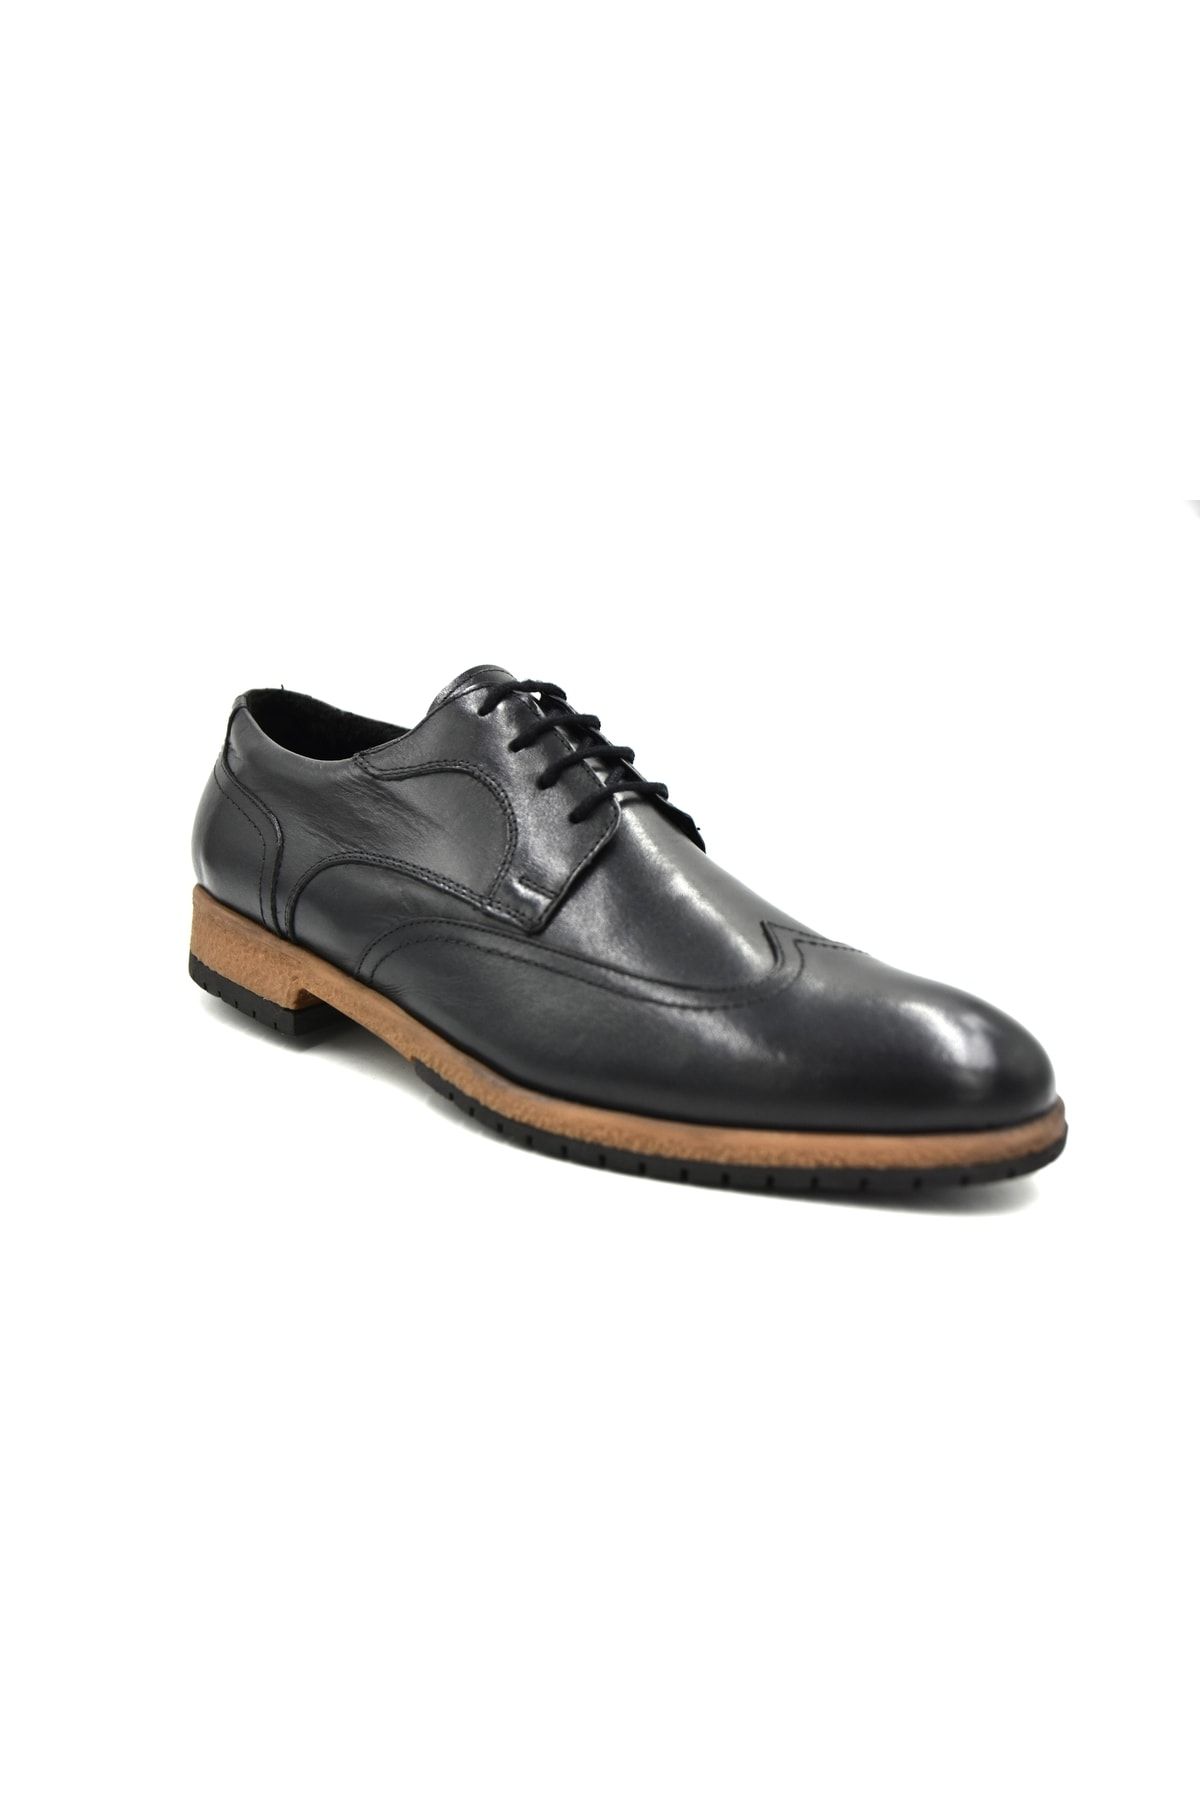 Prego Termo Kaymaz Taban Hakiki Deri Bağcıklı Erkek Klasik Günlük Ayakkabı Siyah